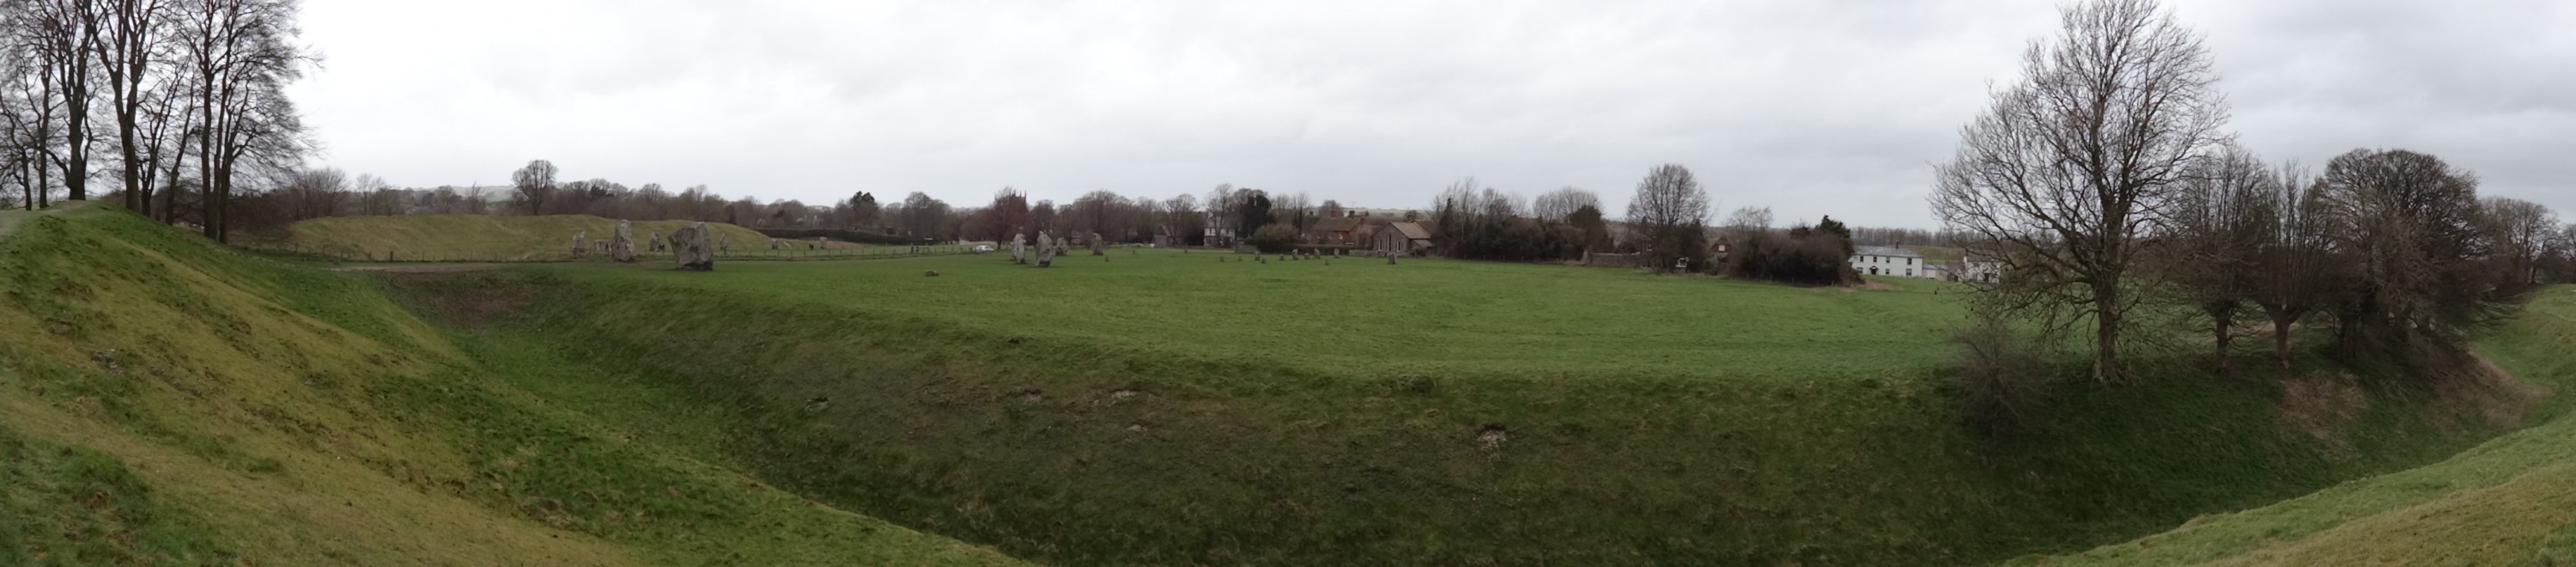 Avebury - Panorama